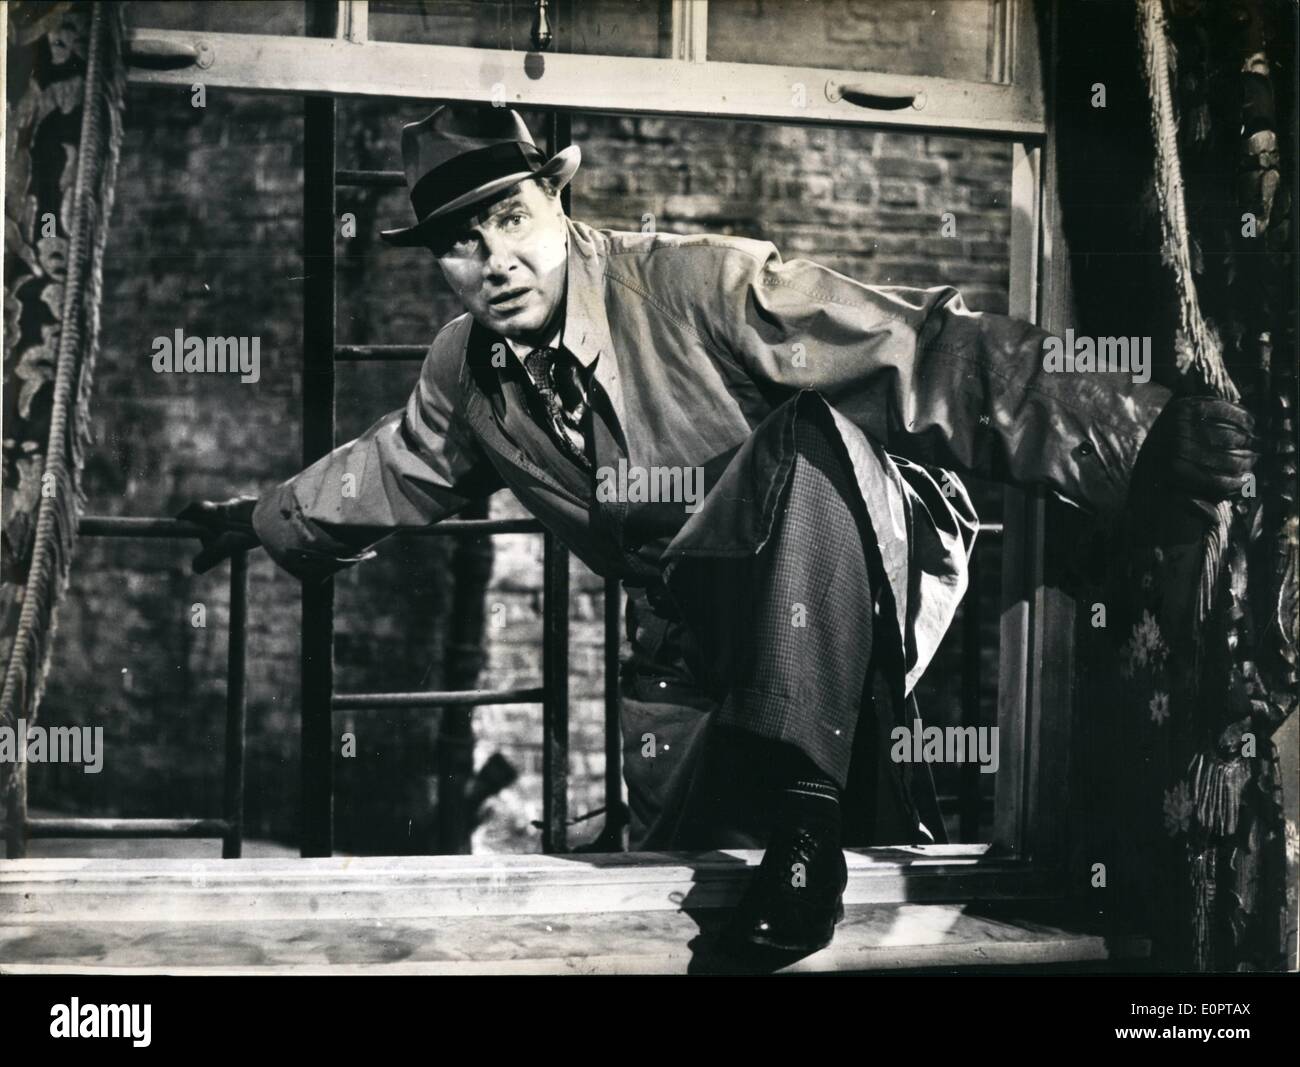 Diciembre 12, 1956 - el espía para Alemania: es el título de la nueva película alemana-picture, que versa sobre la historia de la espía alemán Erich Gimpel. La foto muestra el espía alemán Erich Gimpel (MARTIN celebró) en una escena de la película. Foto de stock